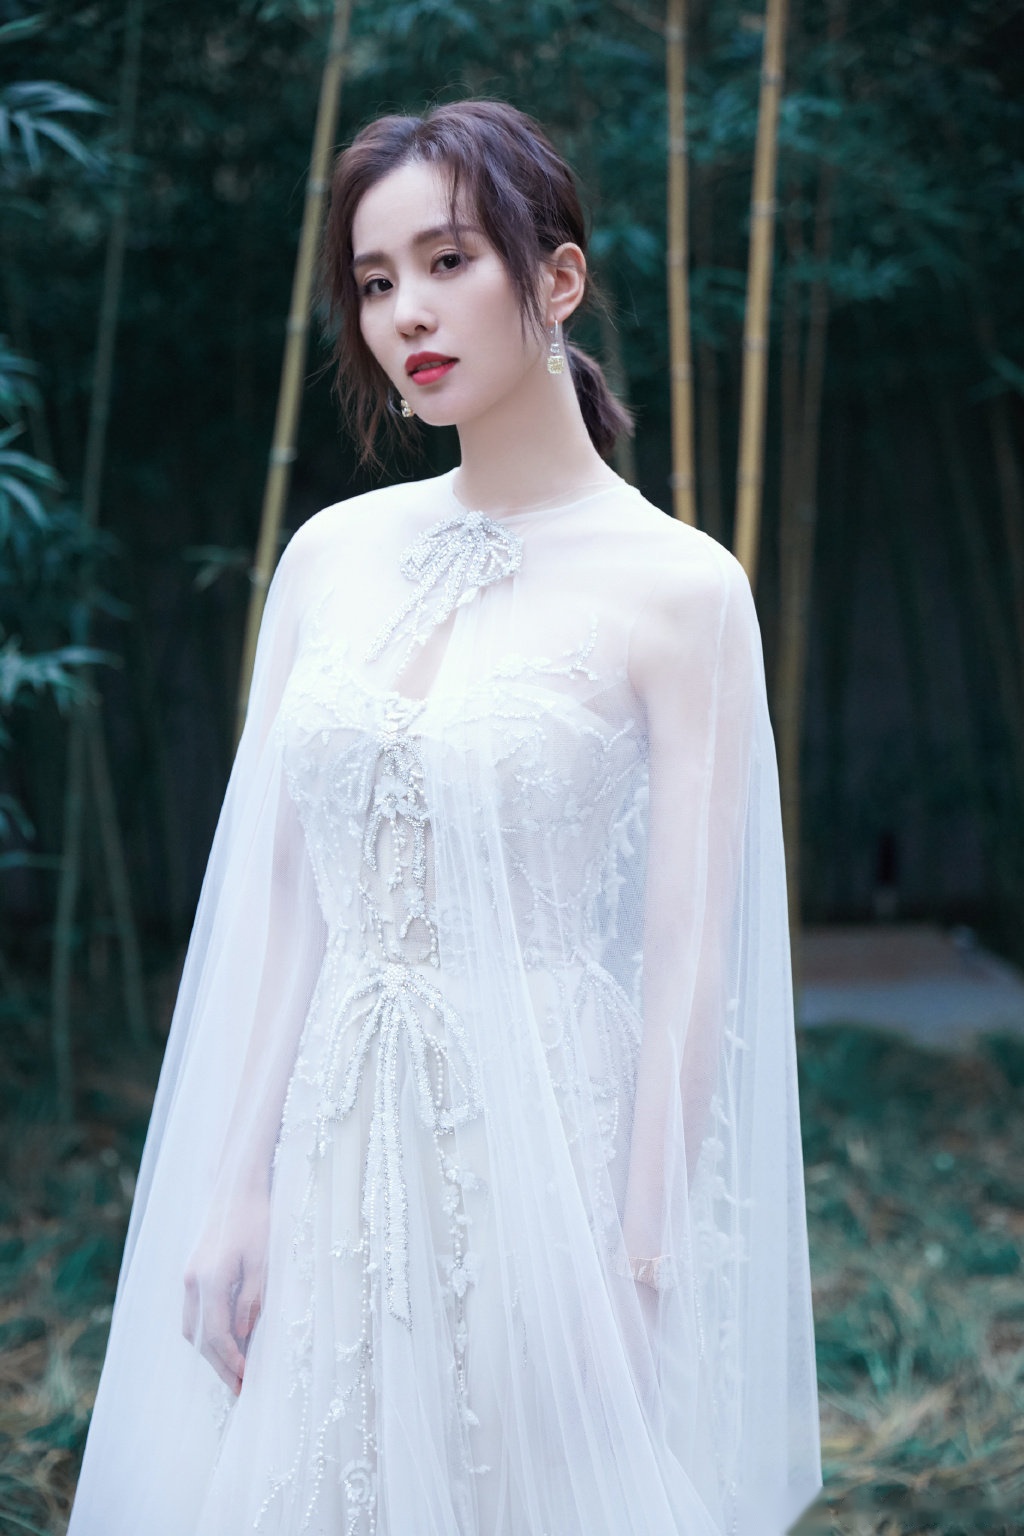 刘诗诗身着一袭白色纱裙仙气飘飘,仙女下凡美极了!